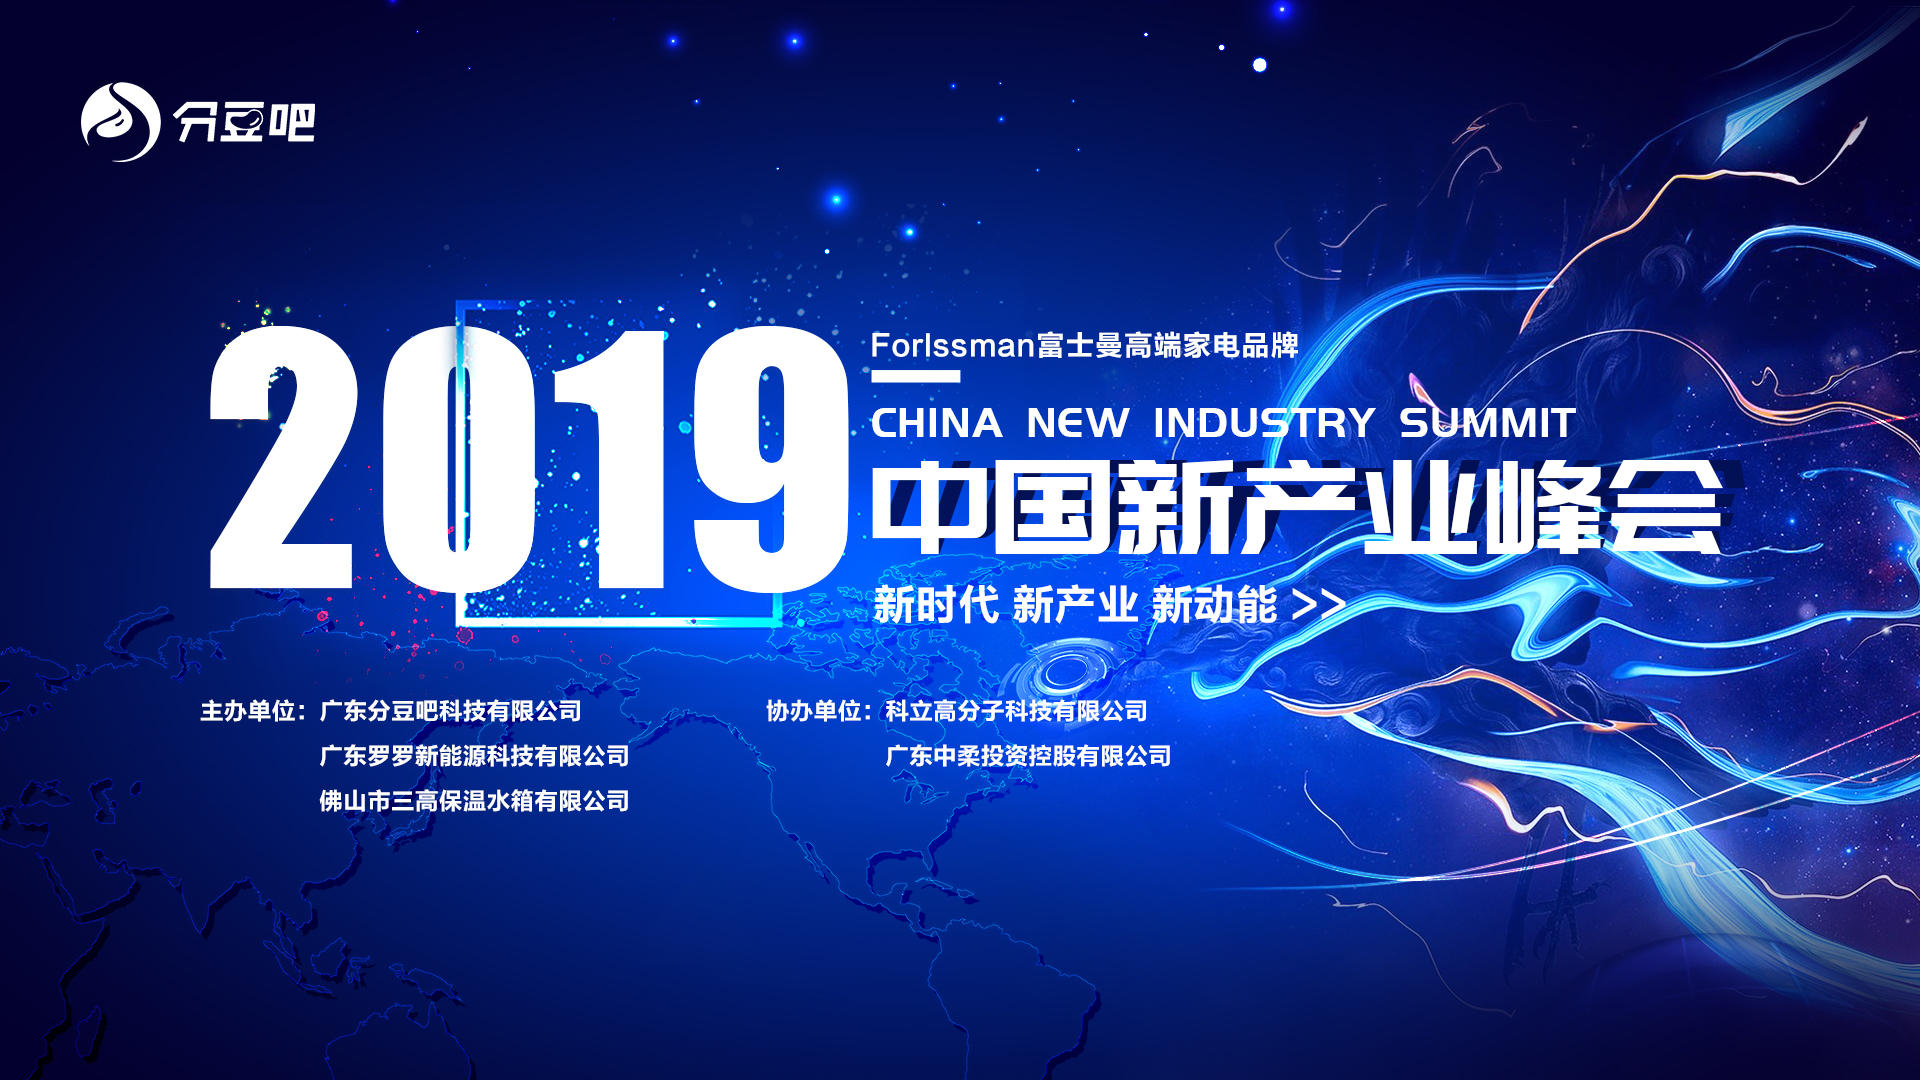 2019中国新产业峰会火热开启 ——暨当前经济环境下的企业生存之道